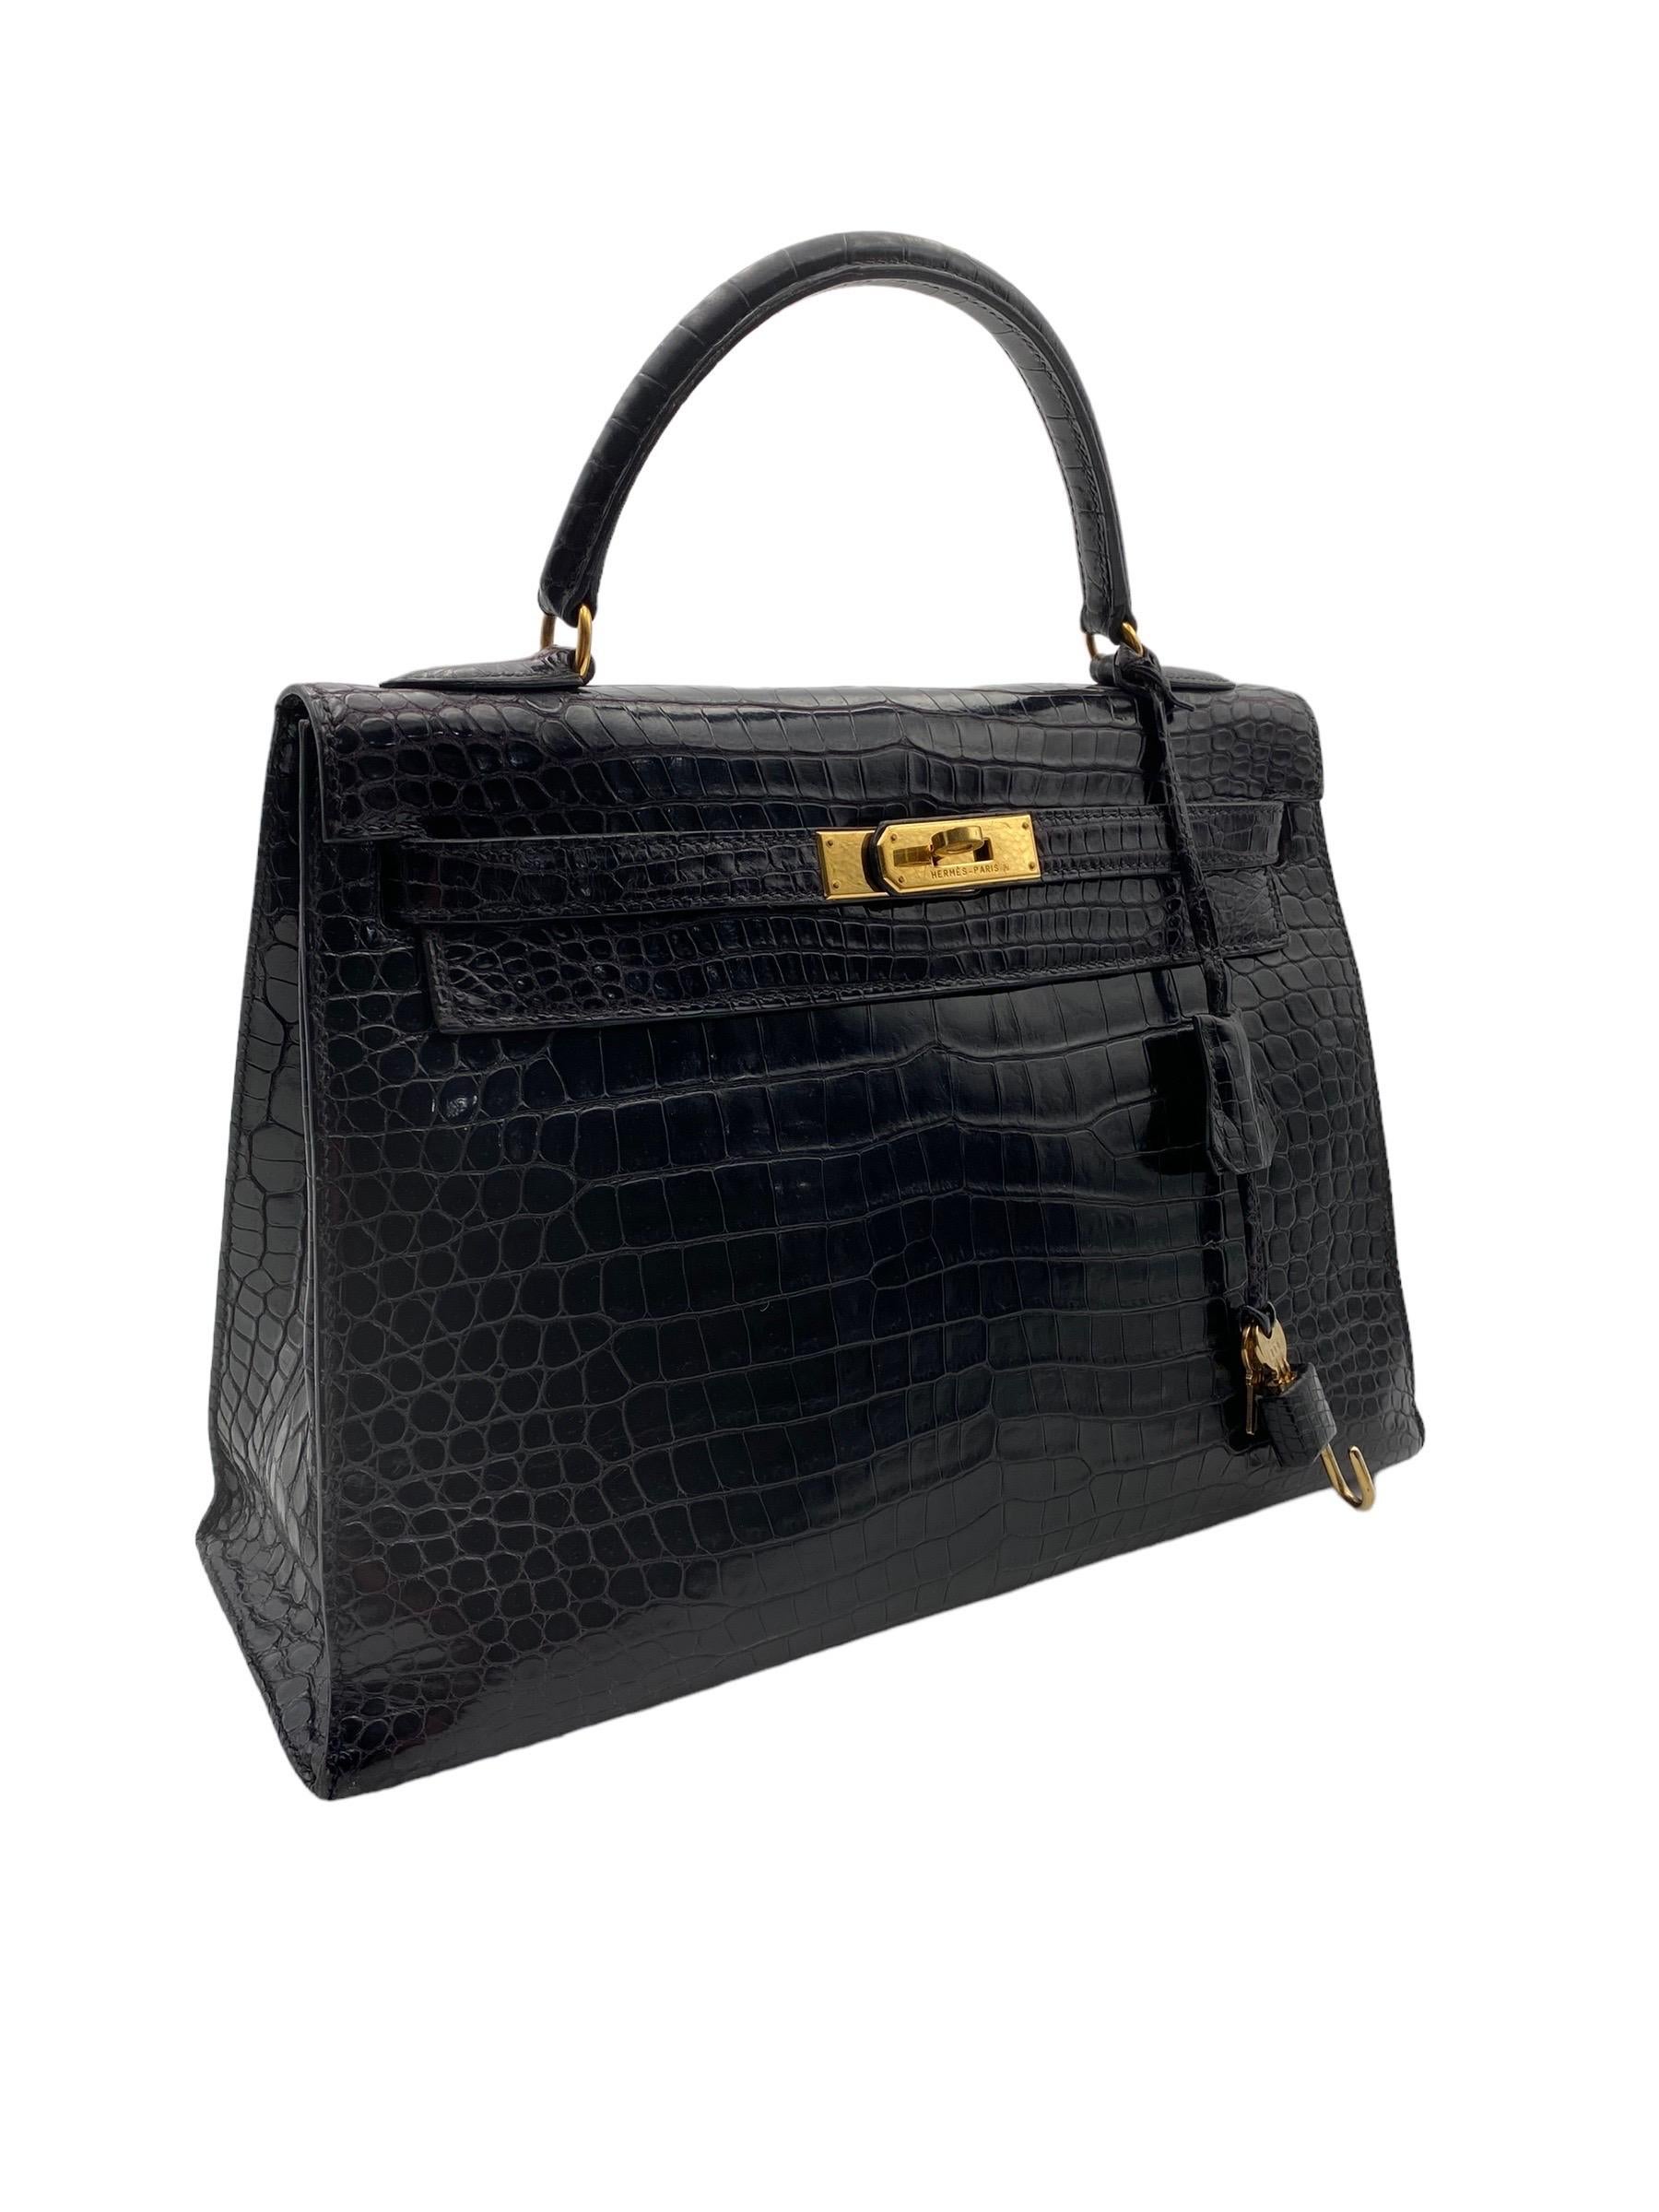 1998 Hermès Kelly 32 Black Leather Top Handle Bag 5